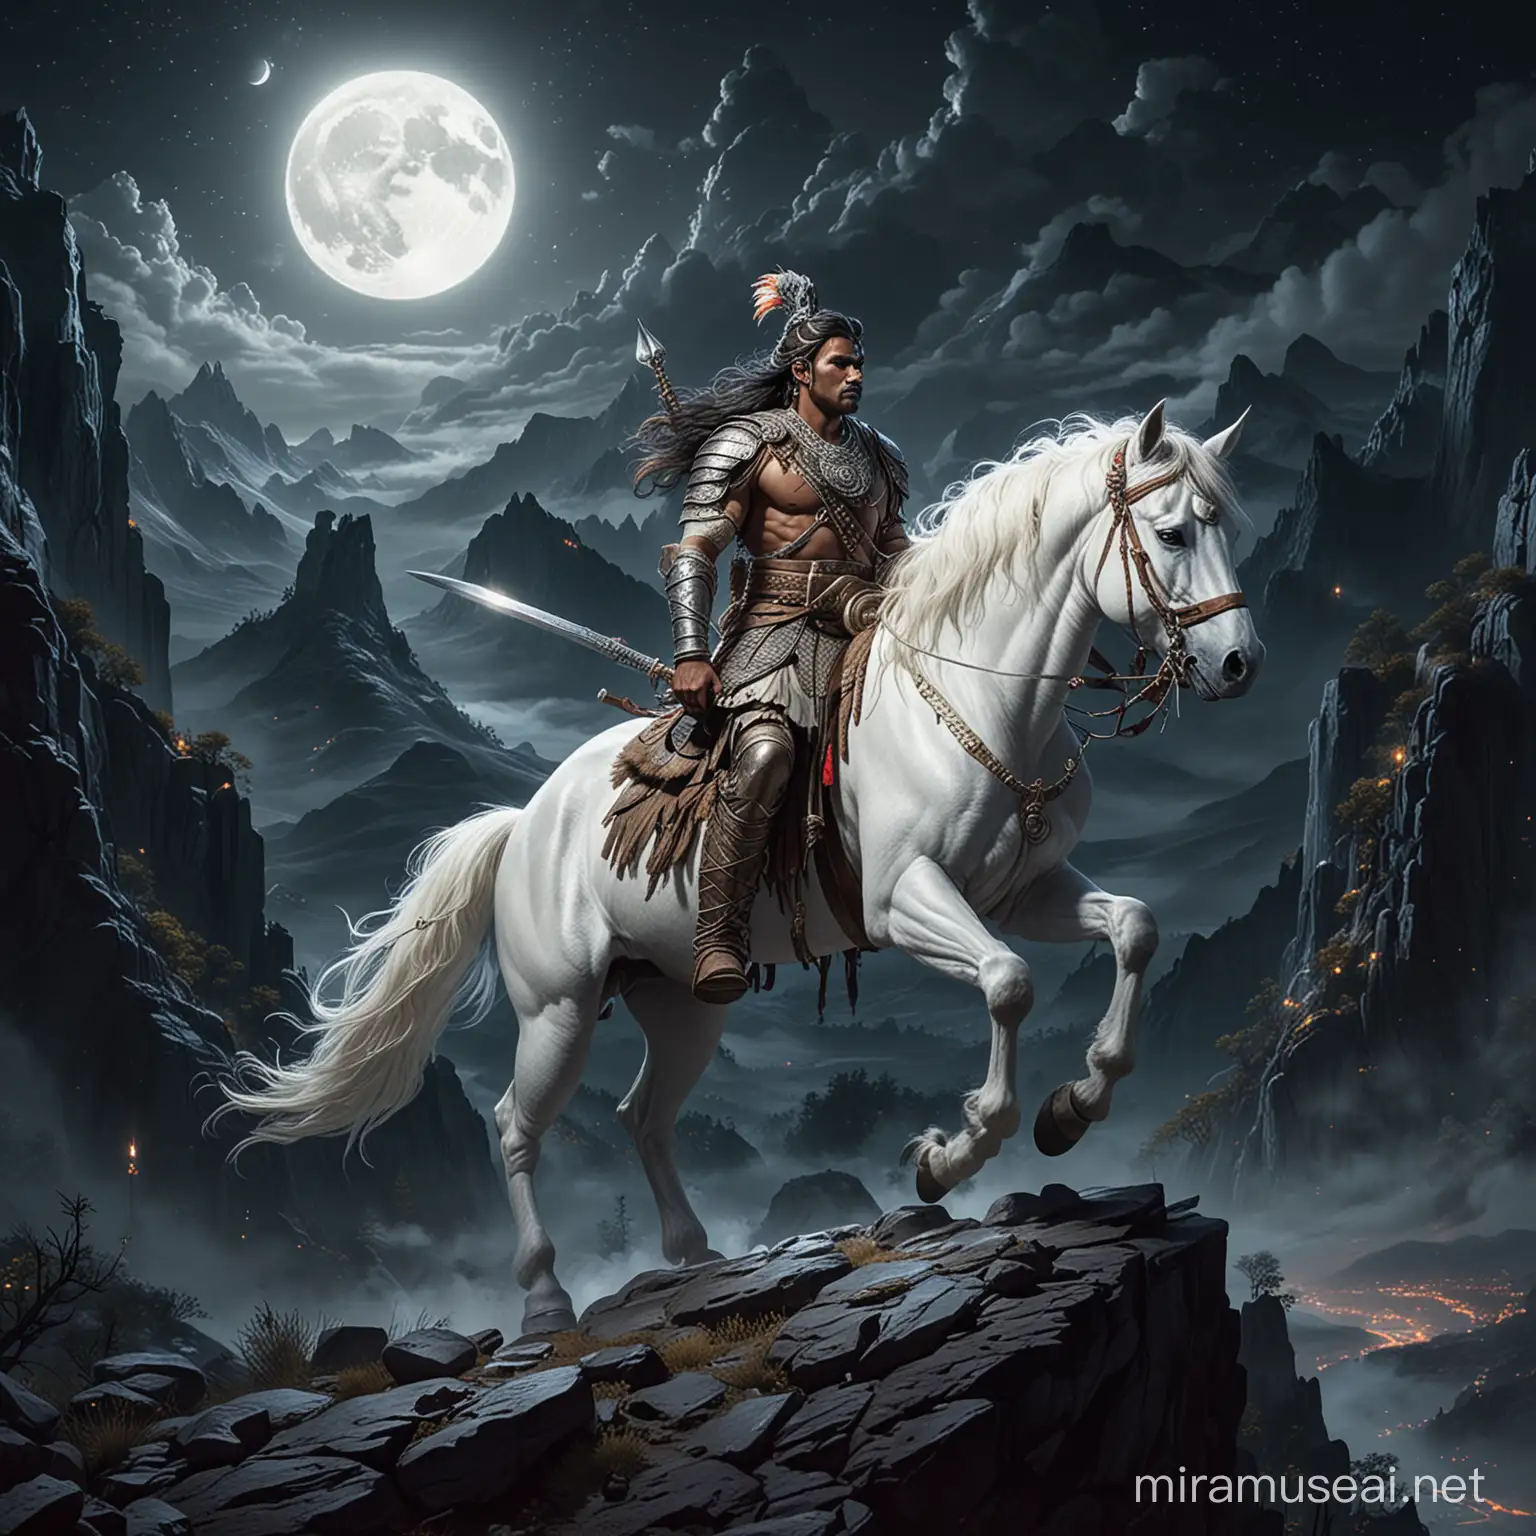 Indian Warrior Riding White Unicorn on Moonlit Mountain Edge